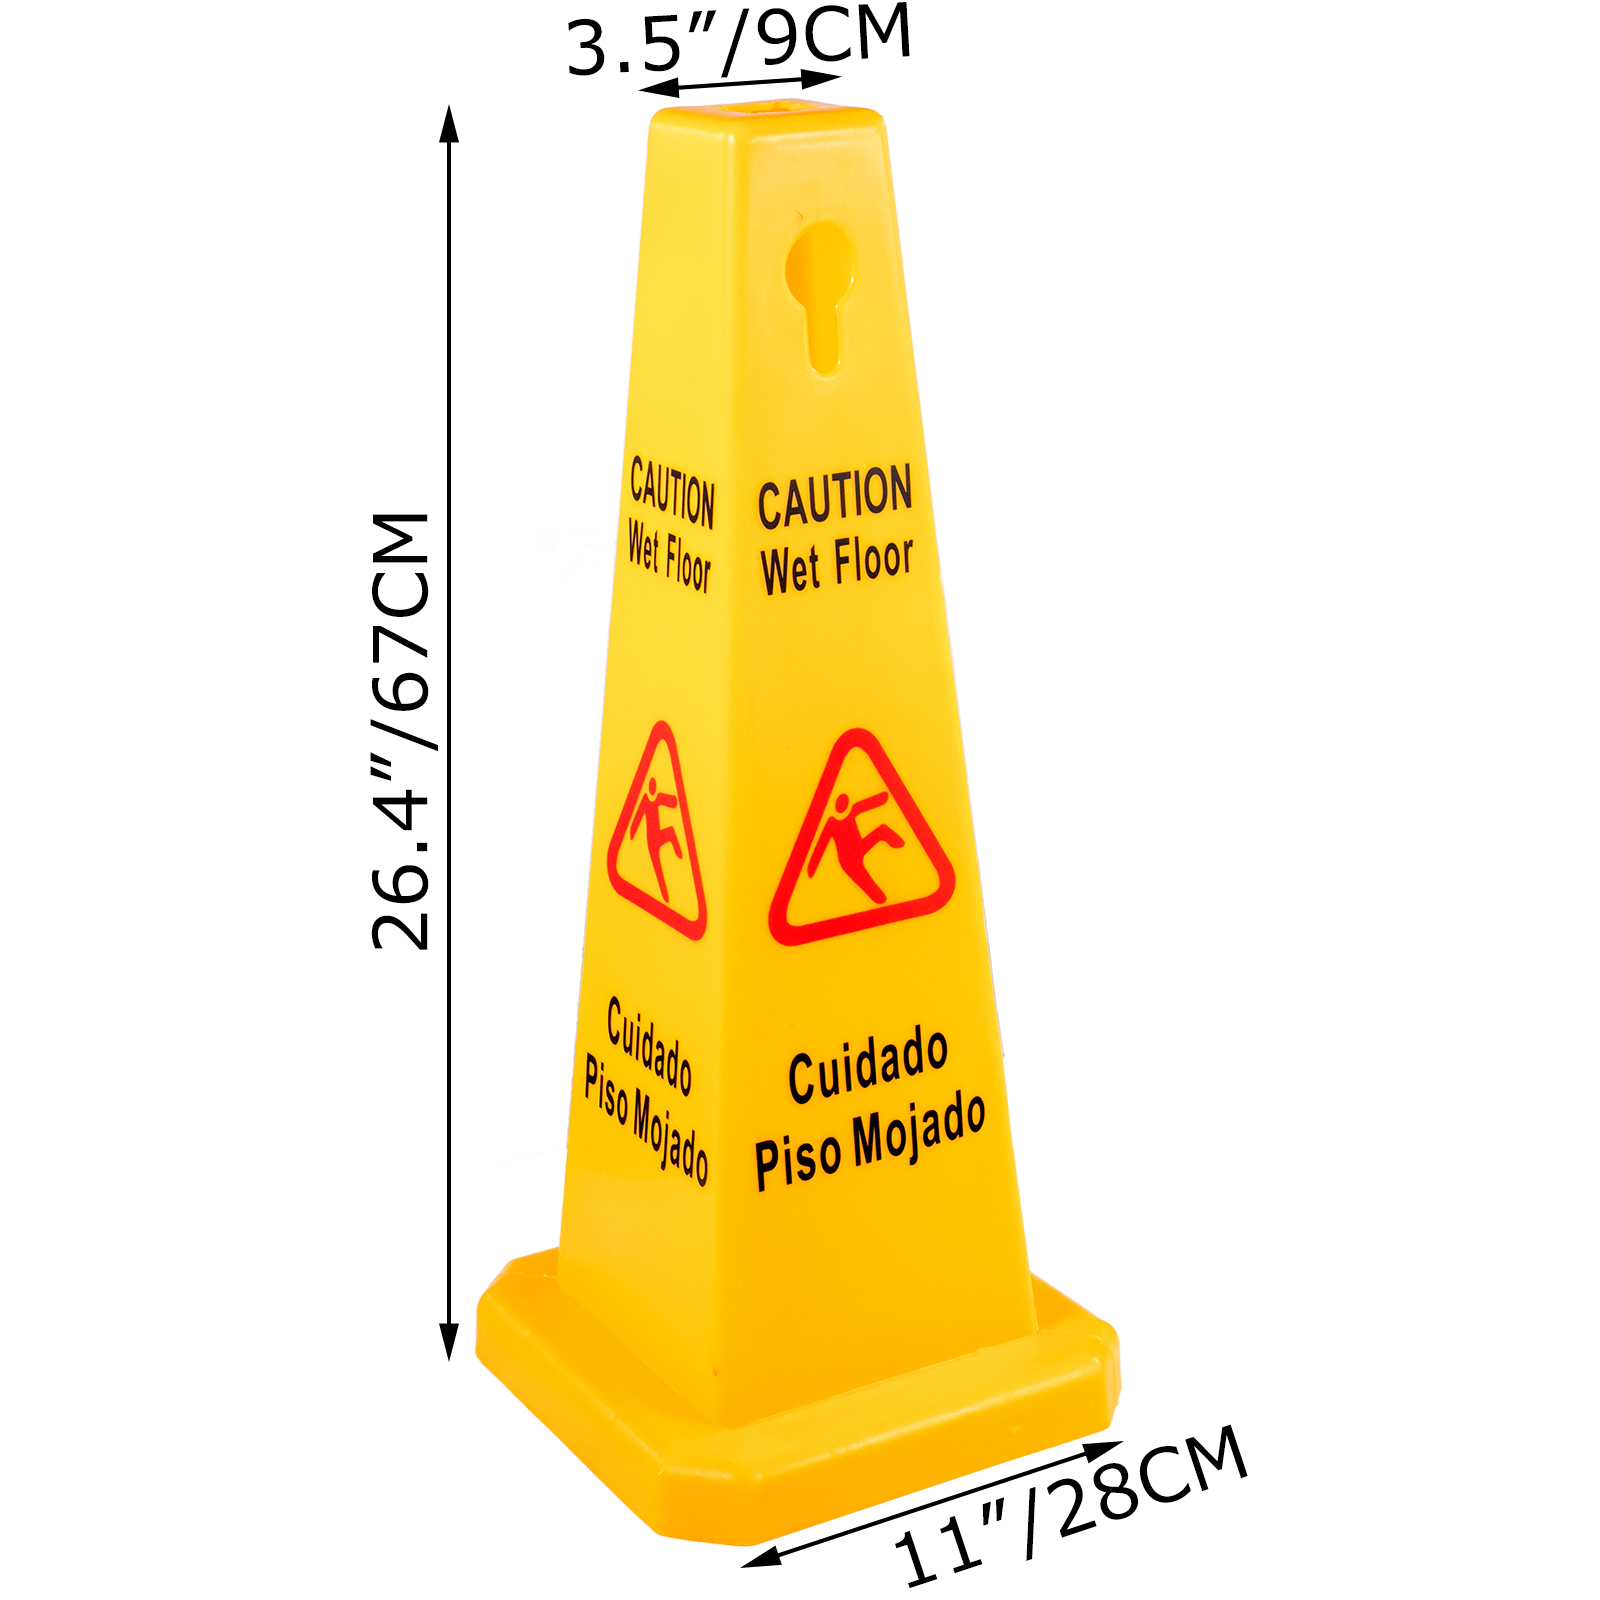 wet-floor-sign-caution-wet-floor-yellow-floor-wet-sign-4-sided-cone